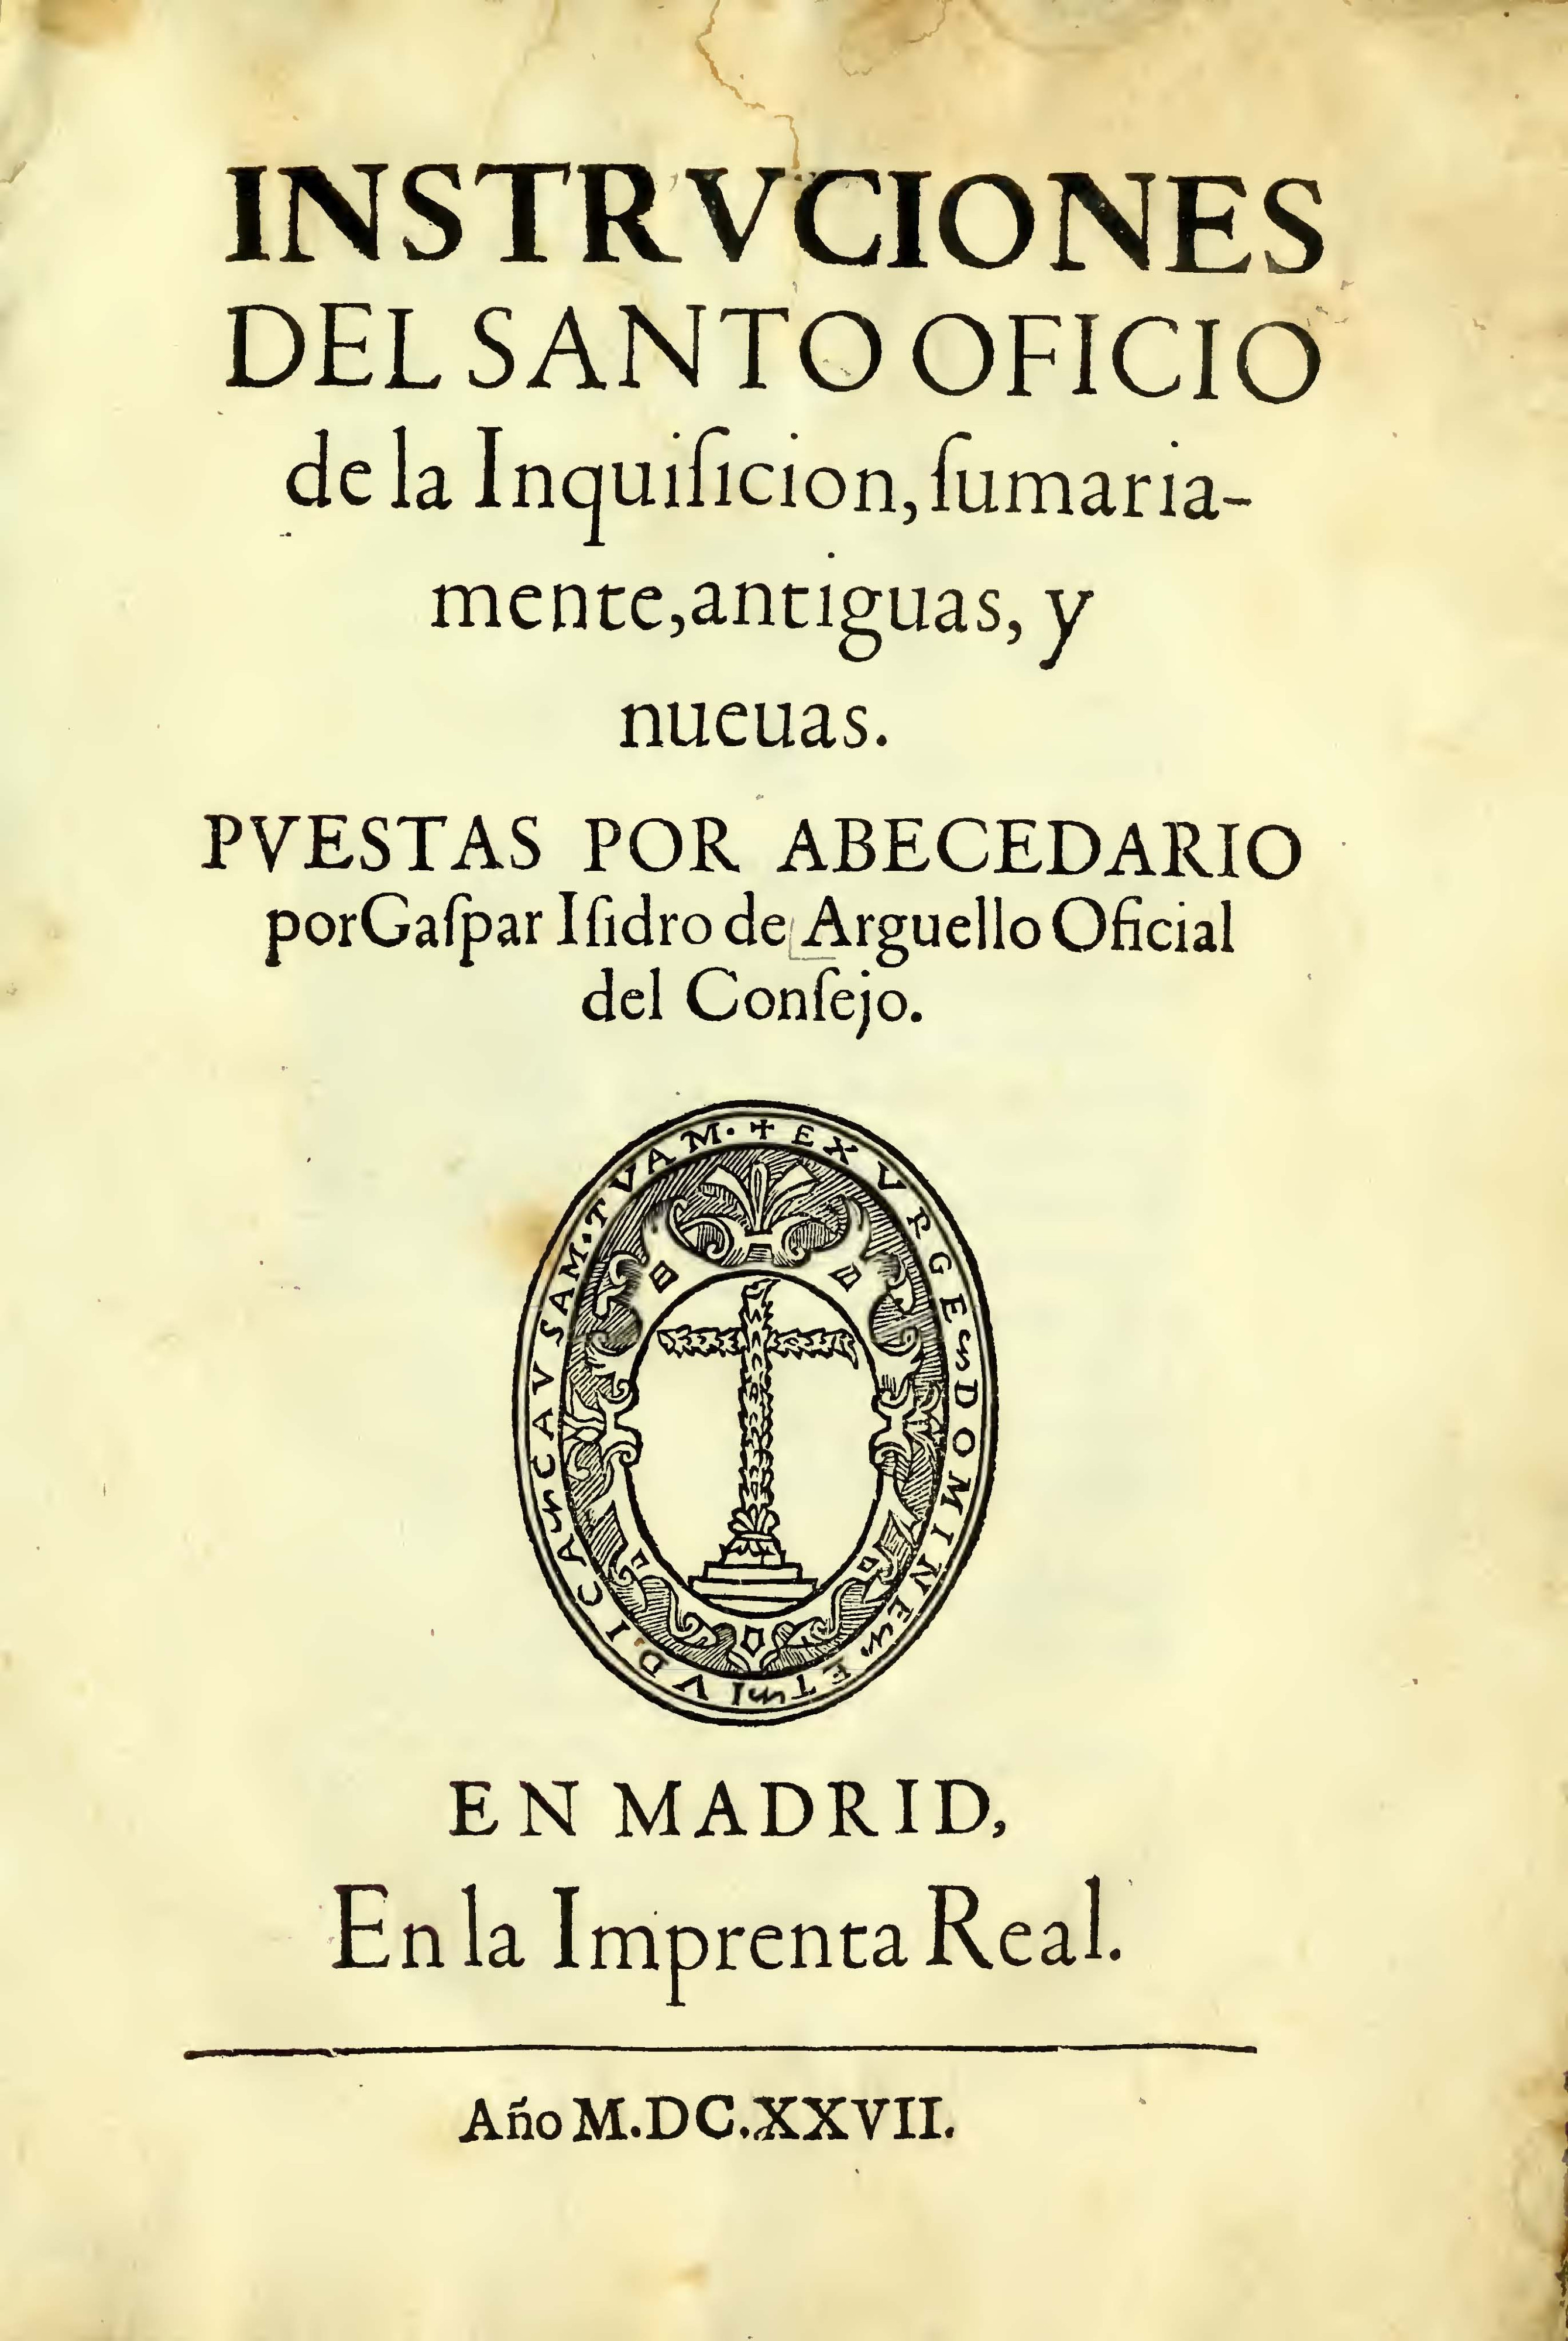 nstrucciones del Santo Oficio de la Inquisicion tanto antigüas como nuevas ordenadas alfabéticamente  (1627), obra de Gaspar Isidro de Arguello